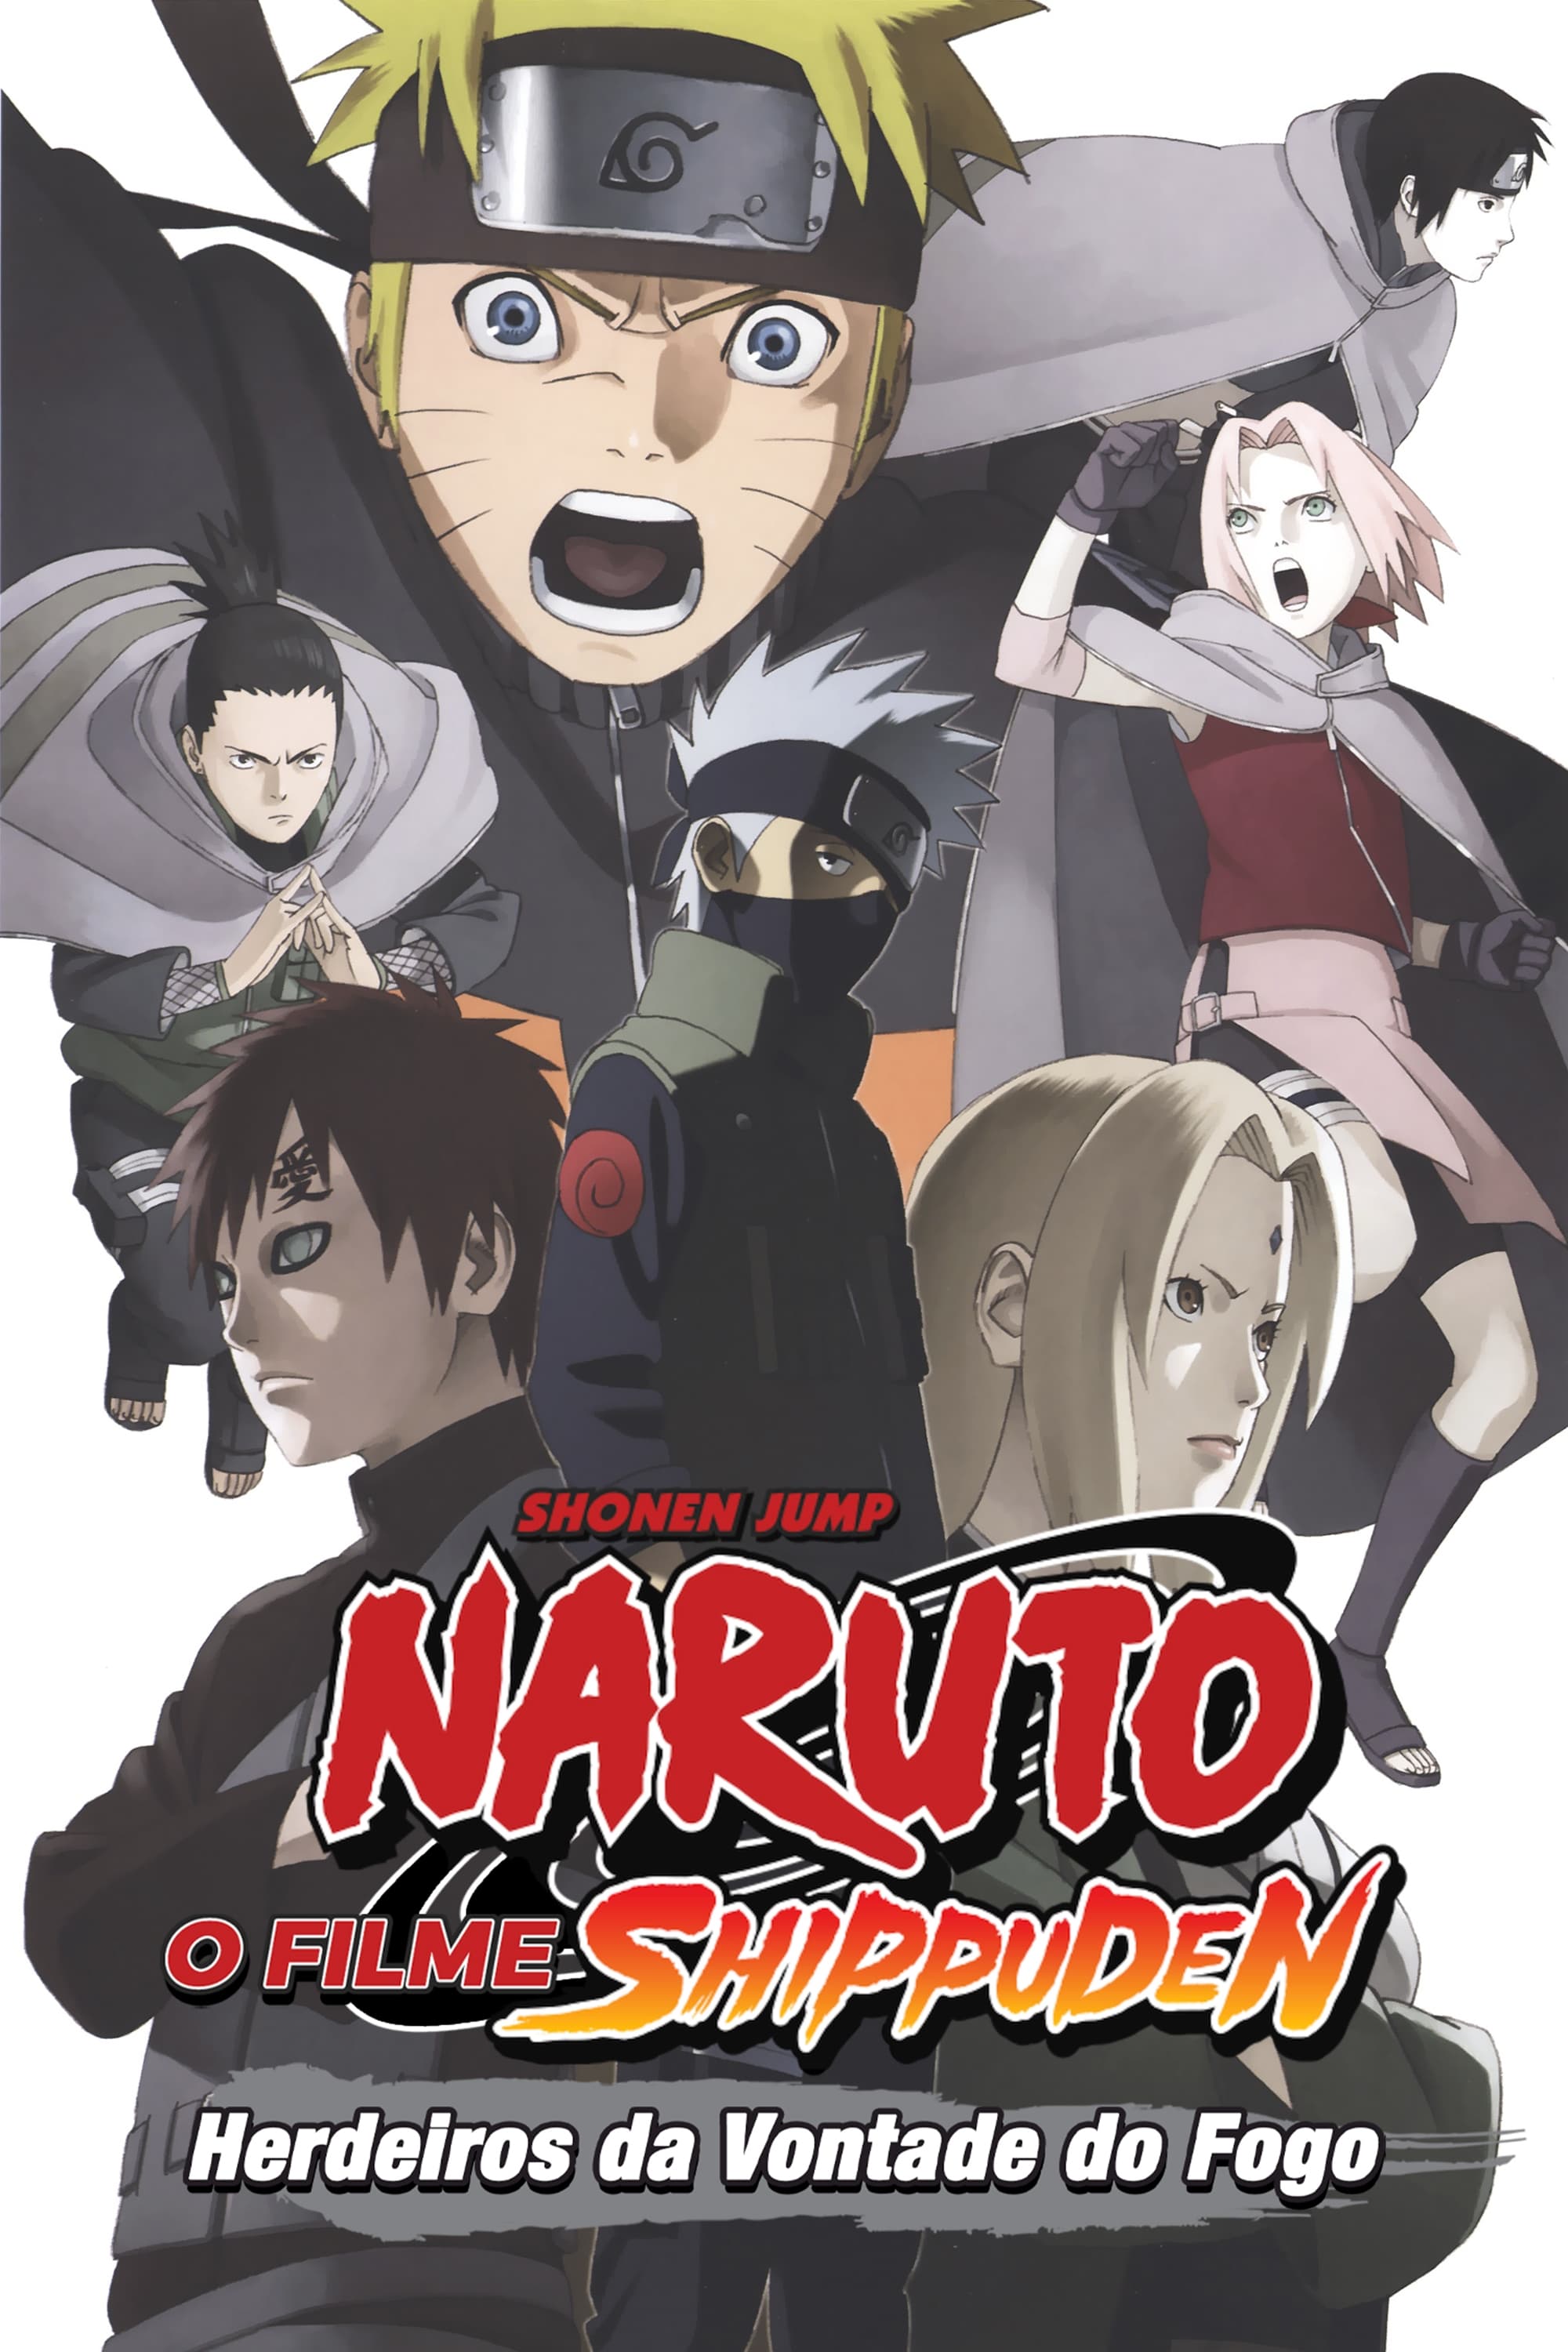 Resumo de Naruto Shippuden 3ª temporada 